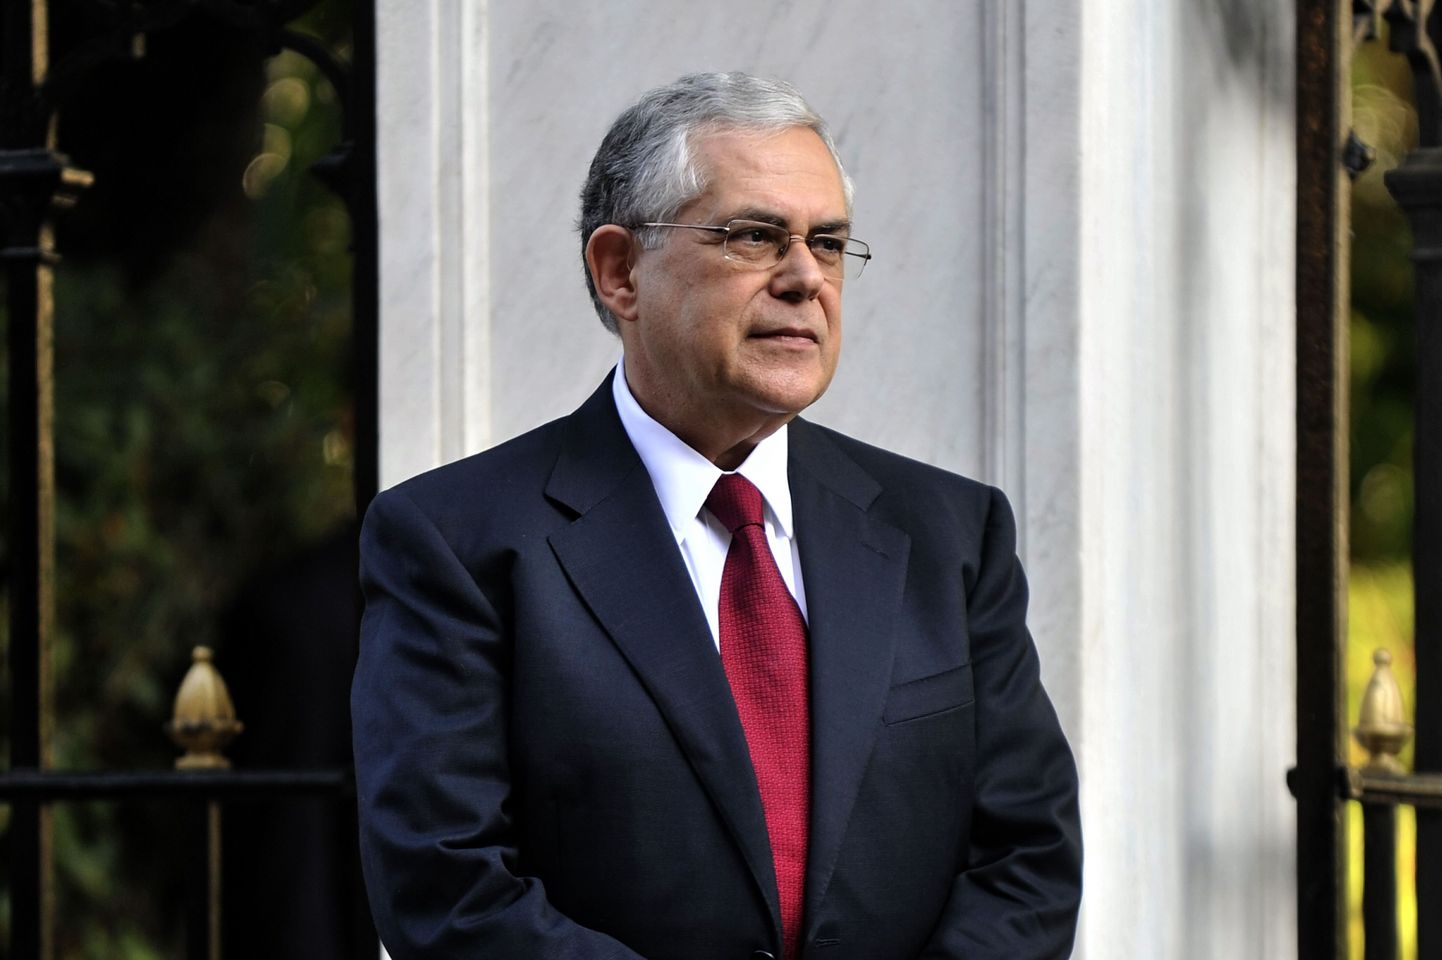 Kreeka ekspeaminister Papademos sai autoplahvatuses raskelt viga.